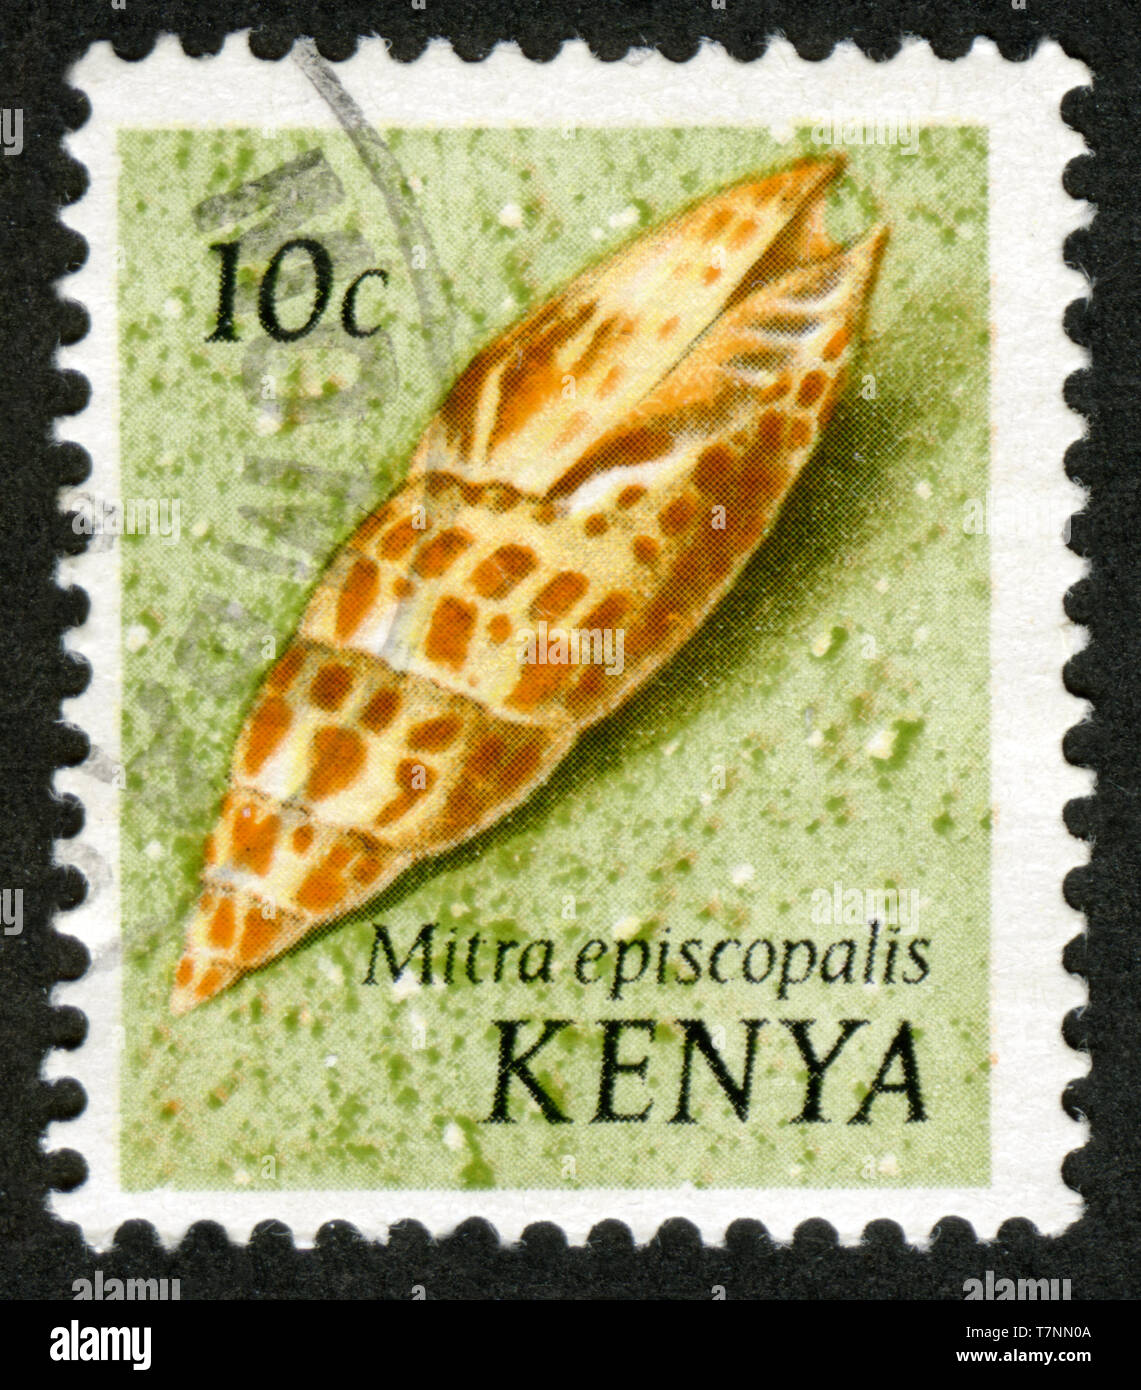 Stamp print in Kenya, Mitra episcopalis Stock Photo